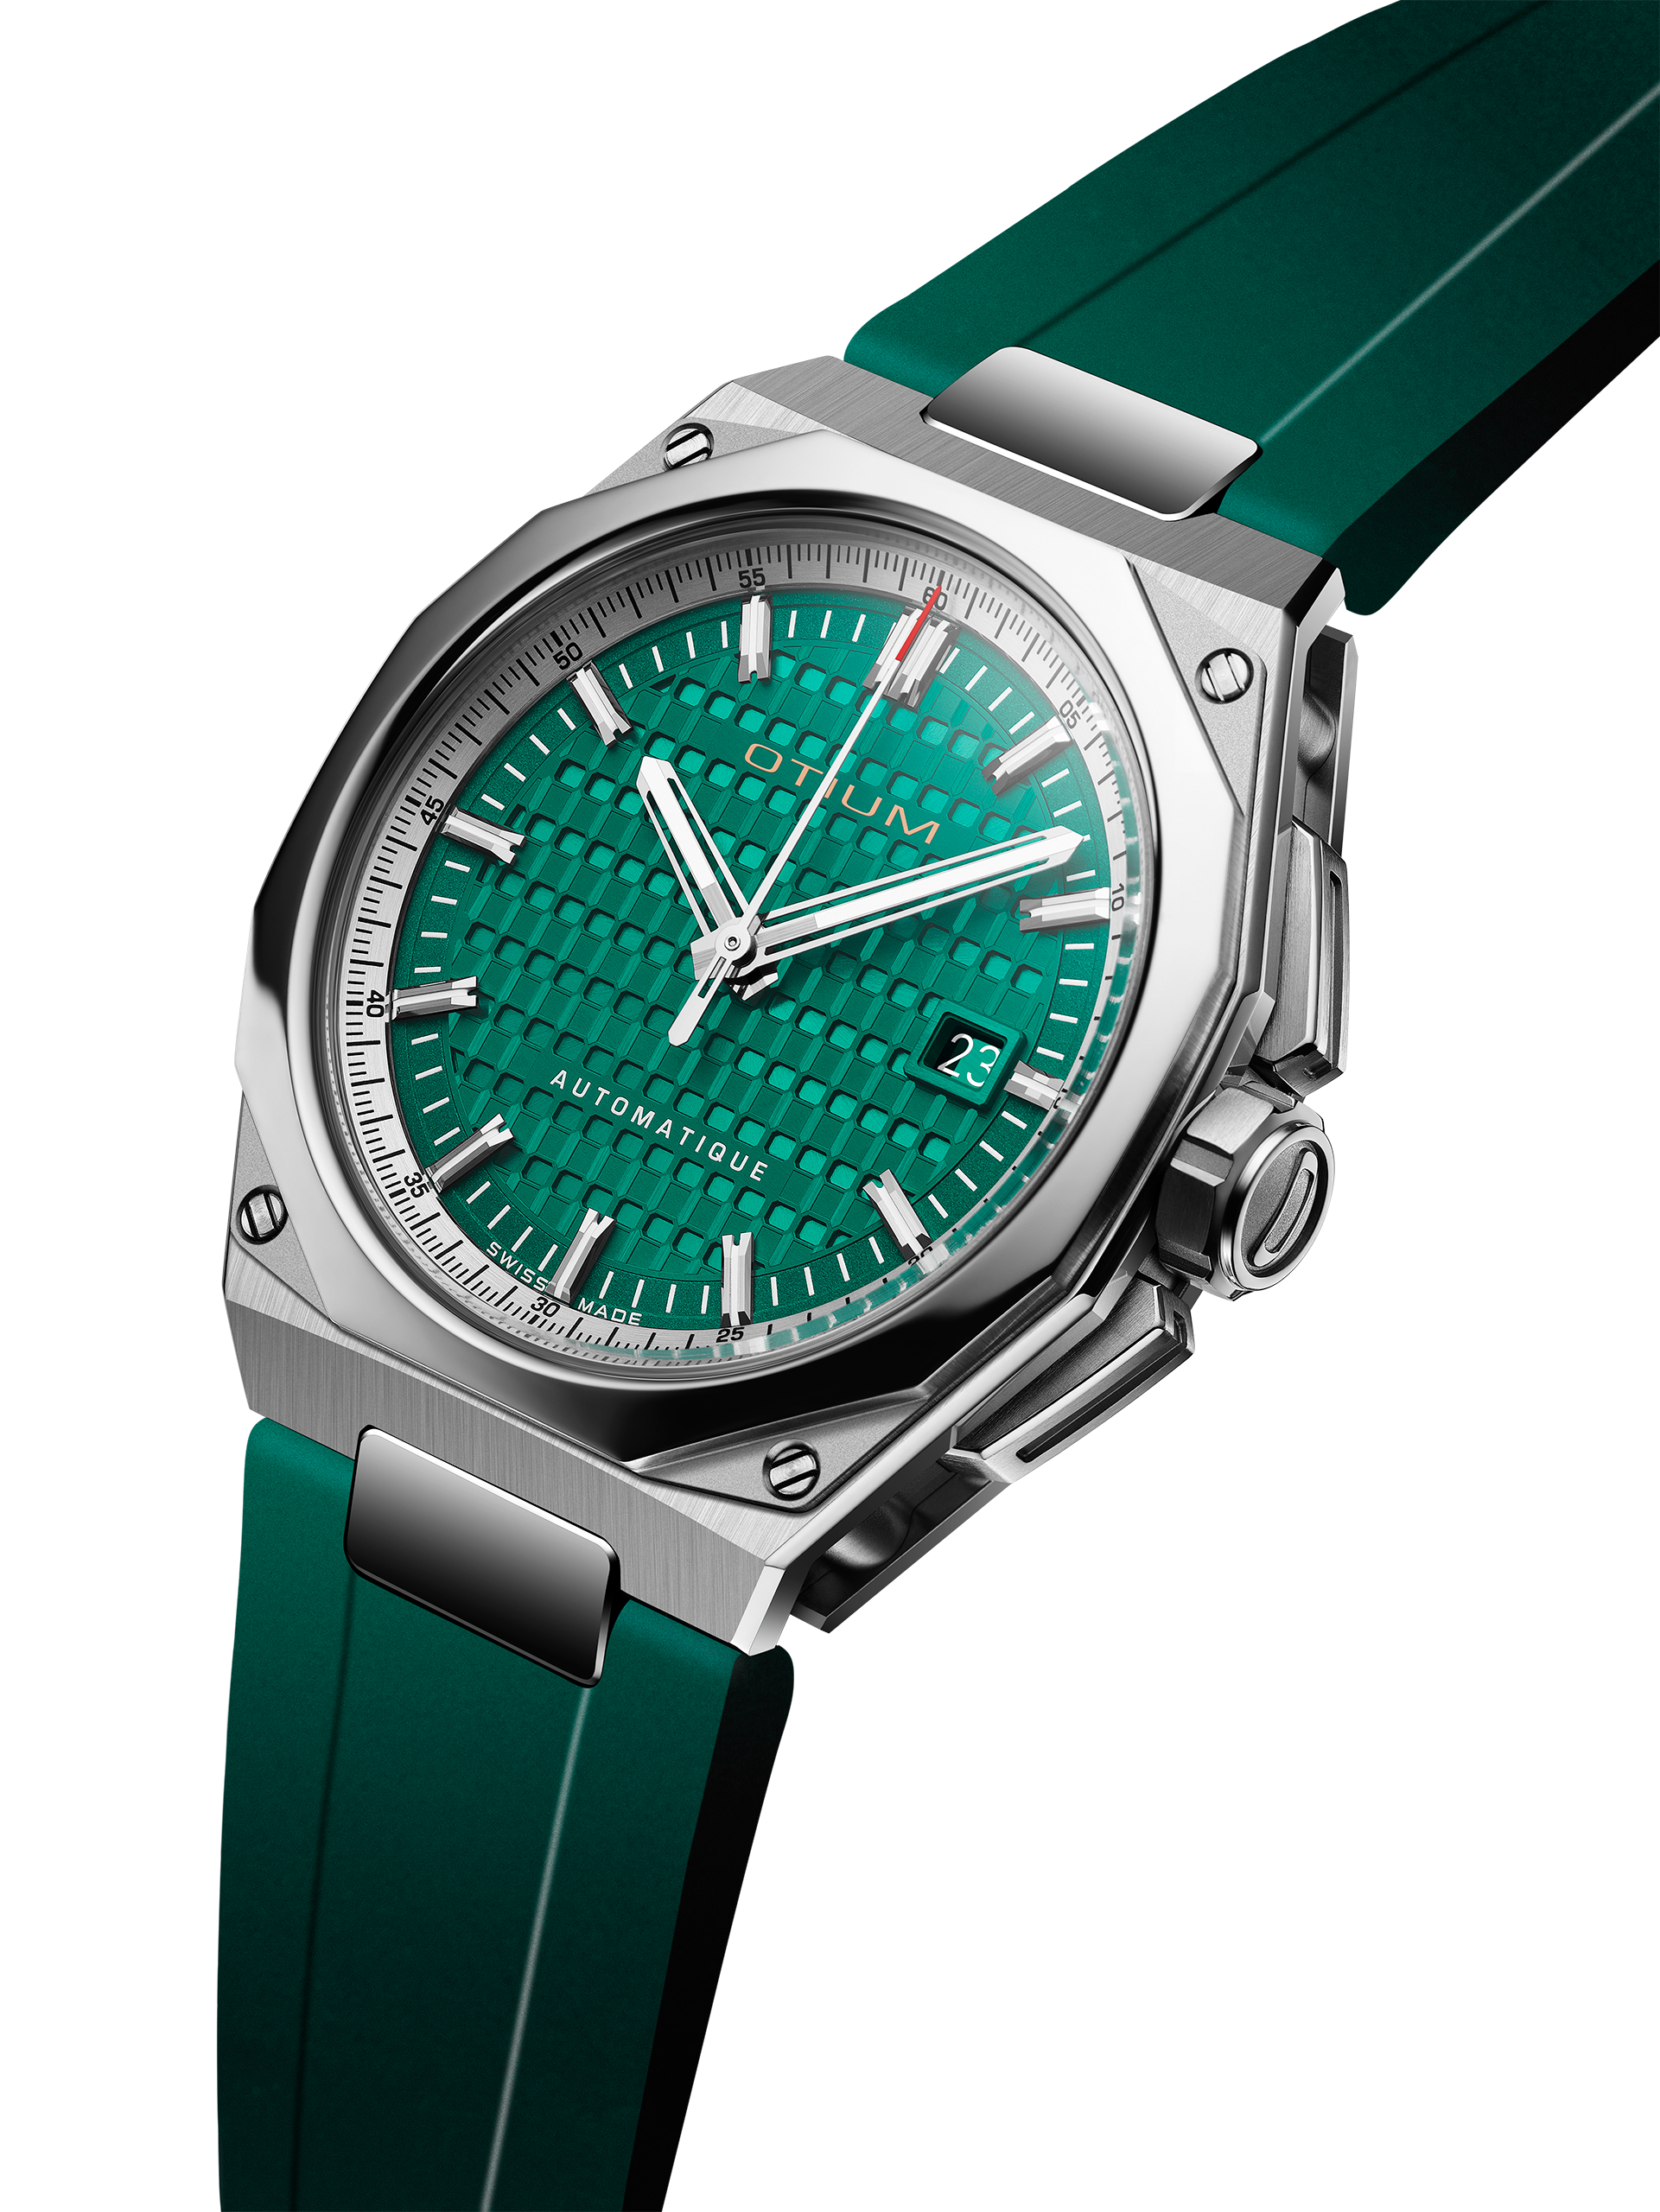 Repose Titanium - Emerald Green